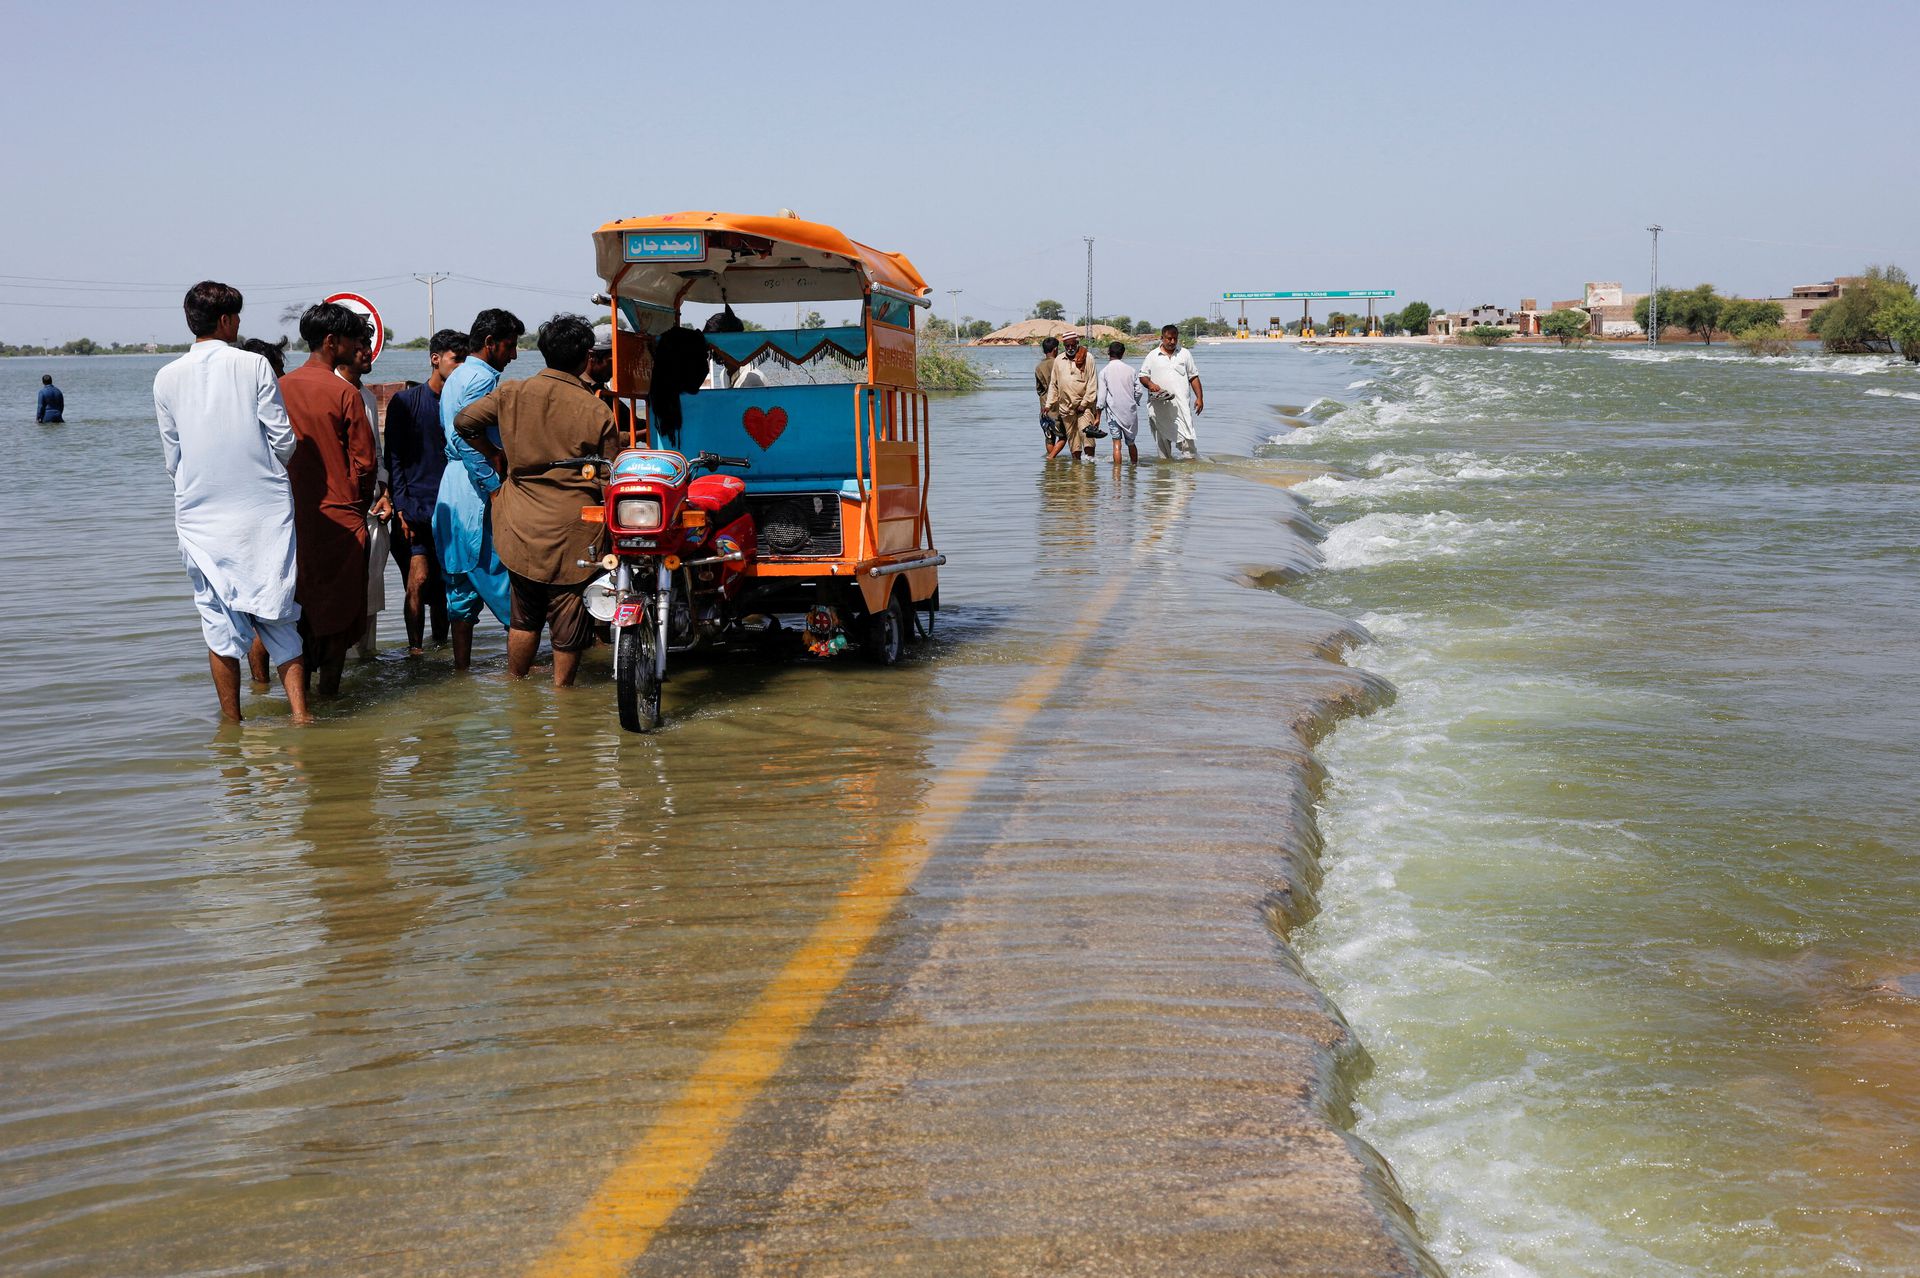 Los países pequeños o en desarrollo son los que más sufren las consecuencias del cambio climático. - Foto Akhtar/Reuters